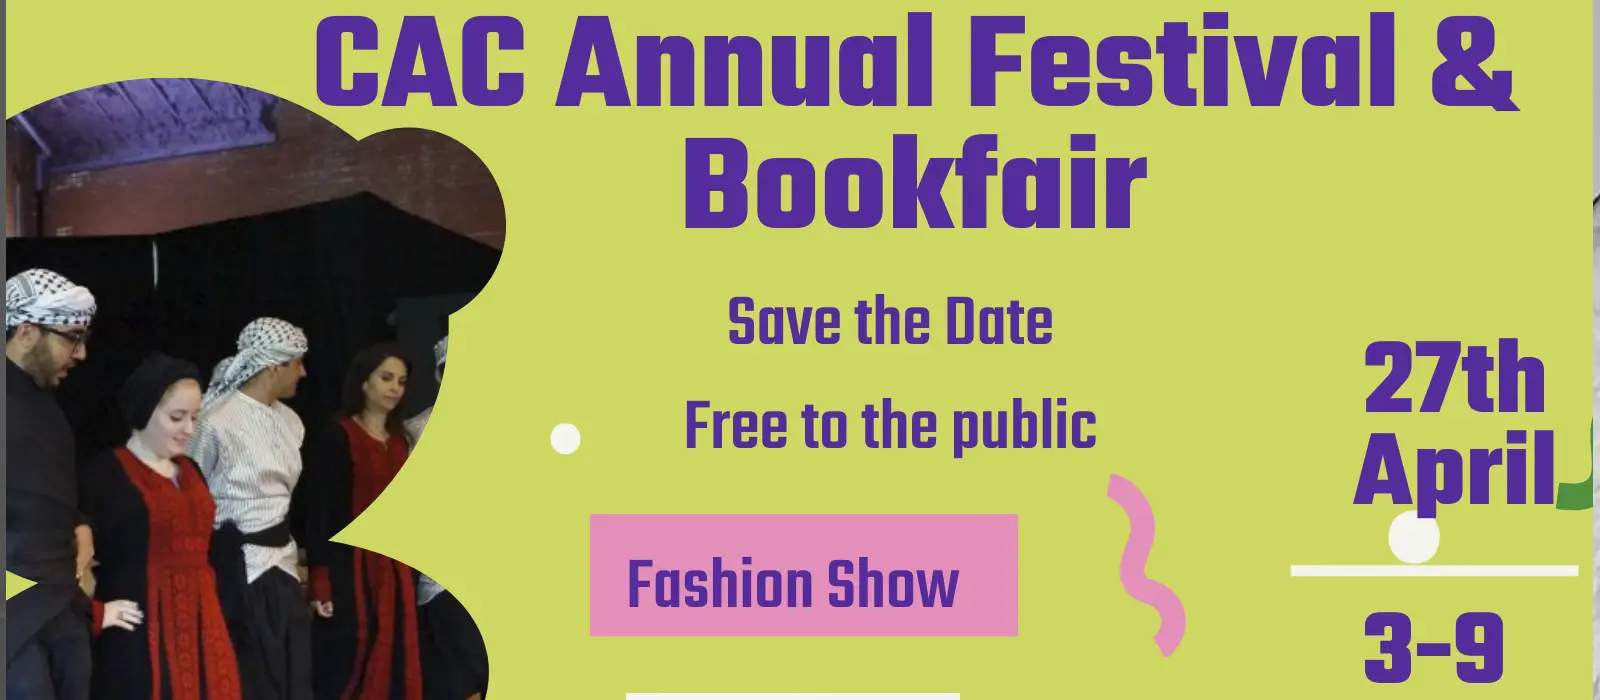 CAC 10th Annual Arab American Festival & Bookfair